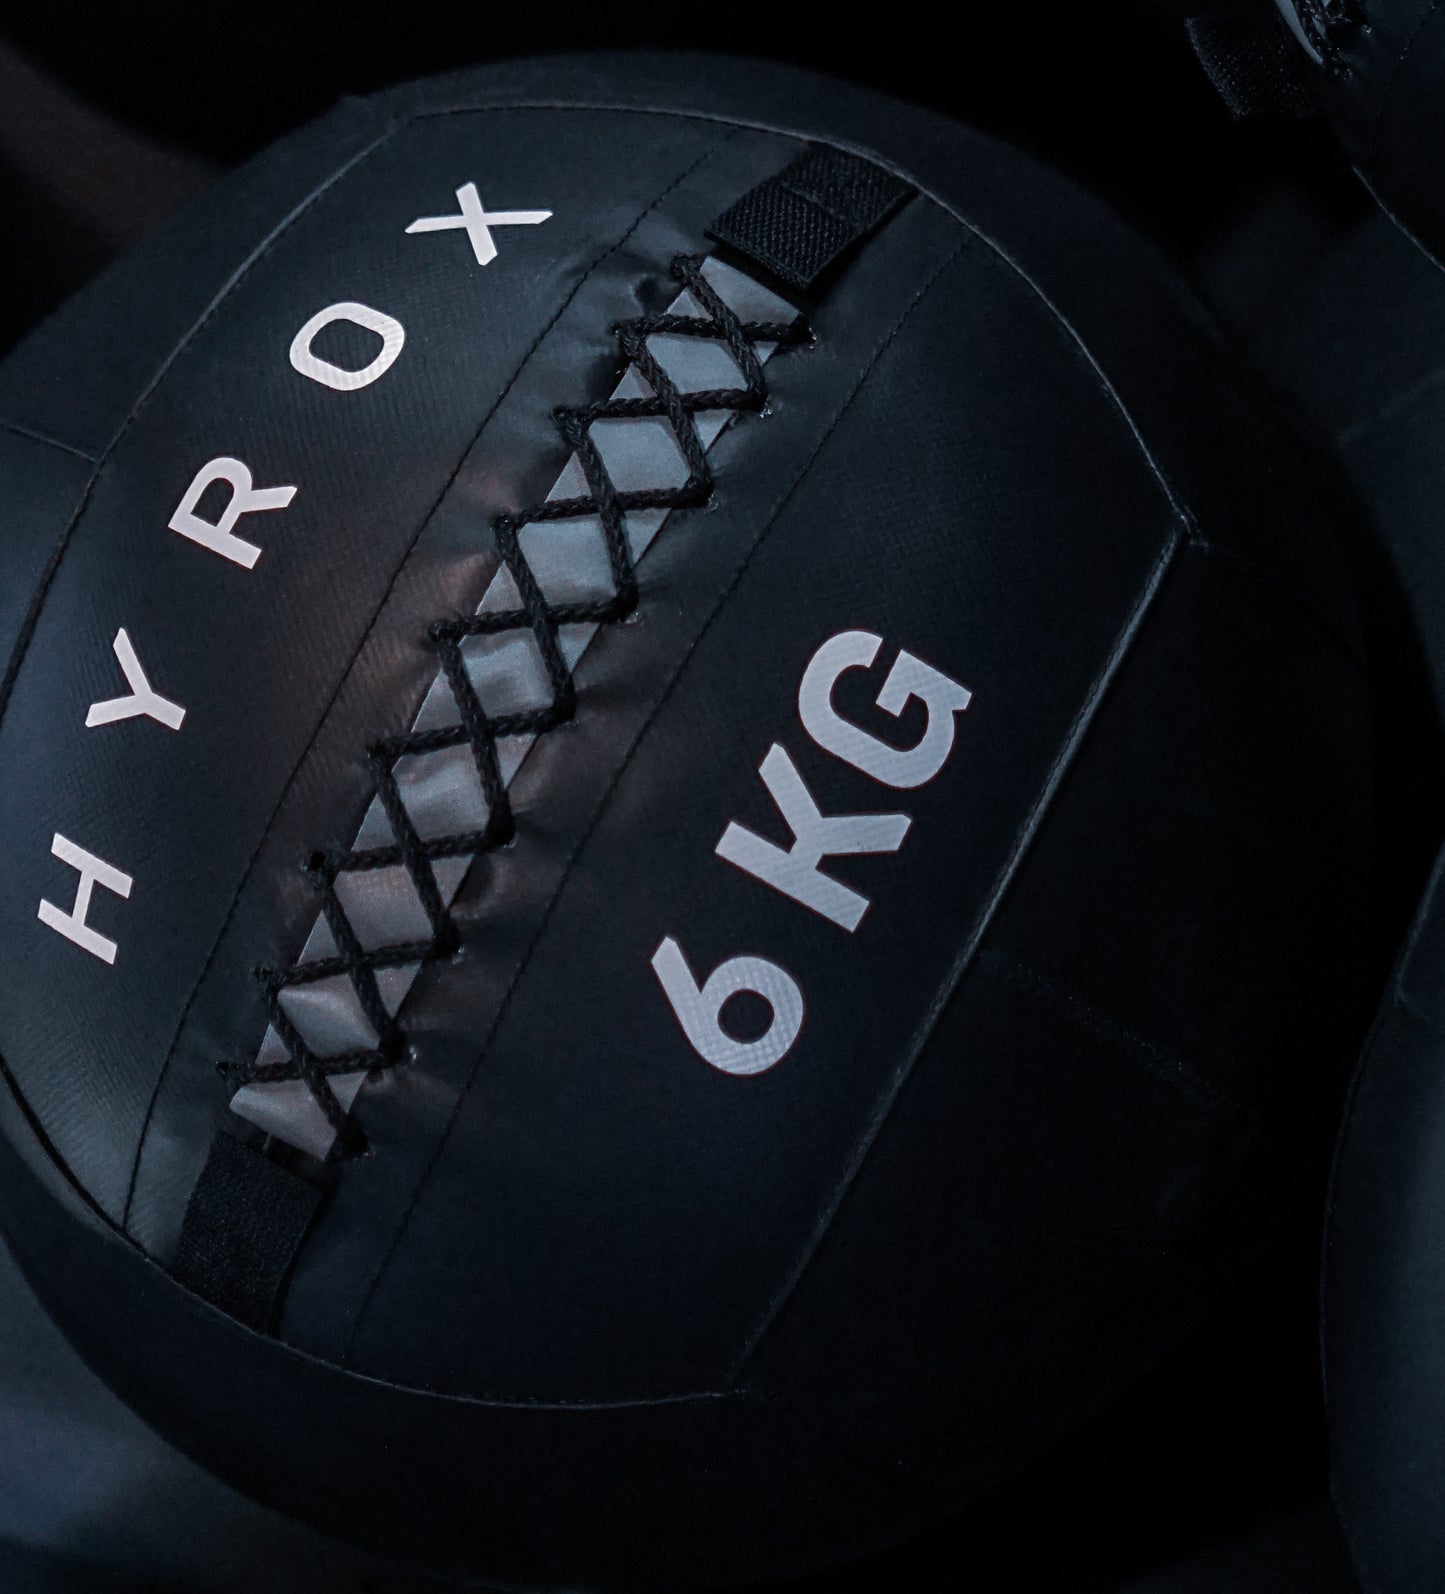 HYROX 6KG Wall Ball